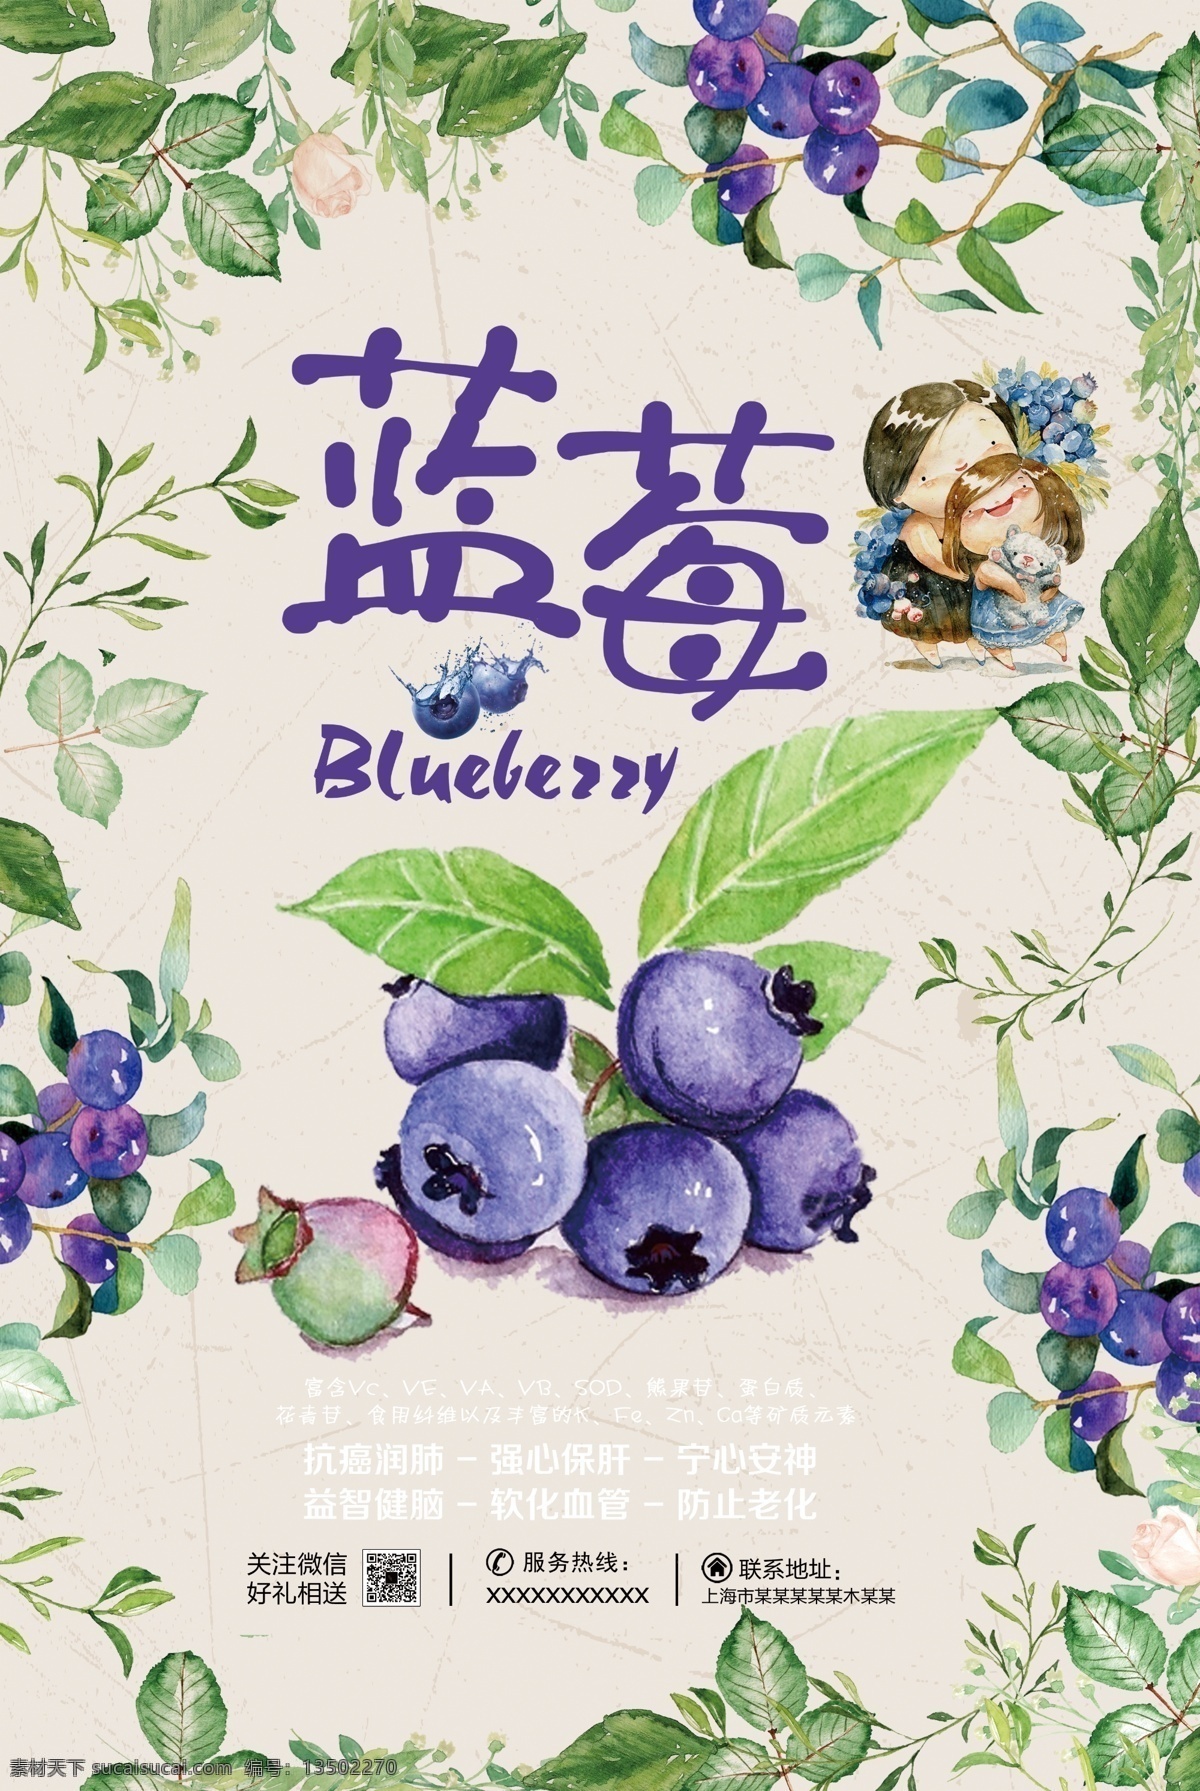 蓝莓 蓝莓促销 手绘蓝莓 蓝莓卡通 可爱的 小青也 手绘树叶 蓝莓字体 蓝莓展板 蓝莓展架